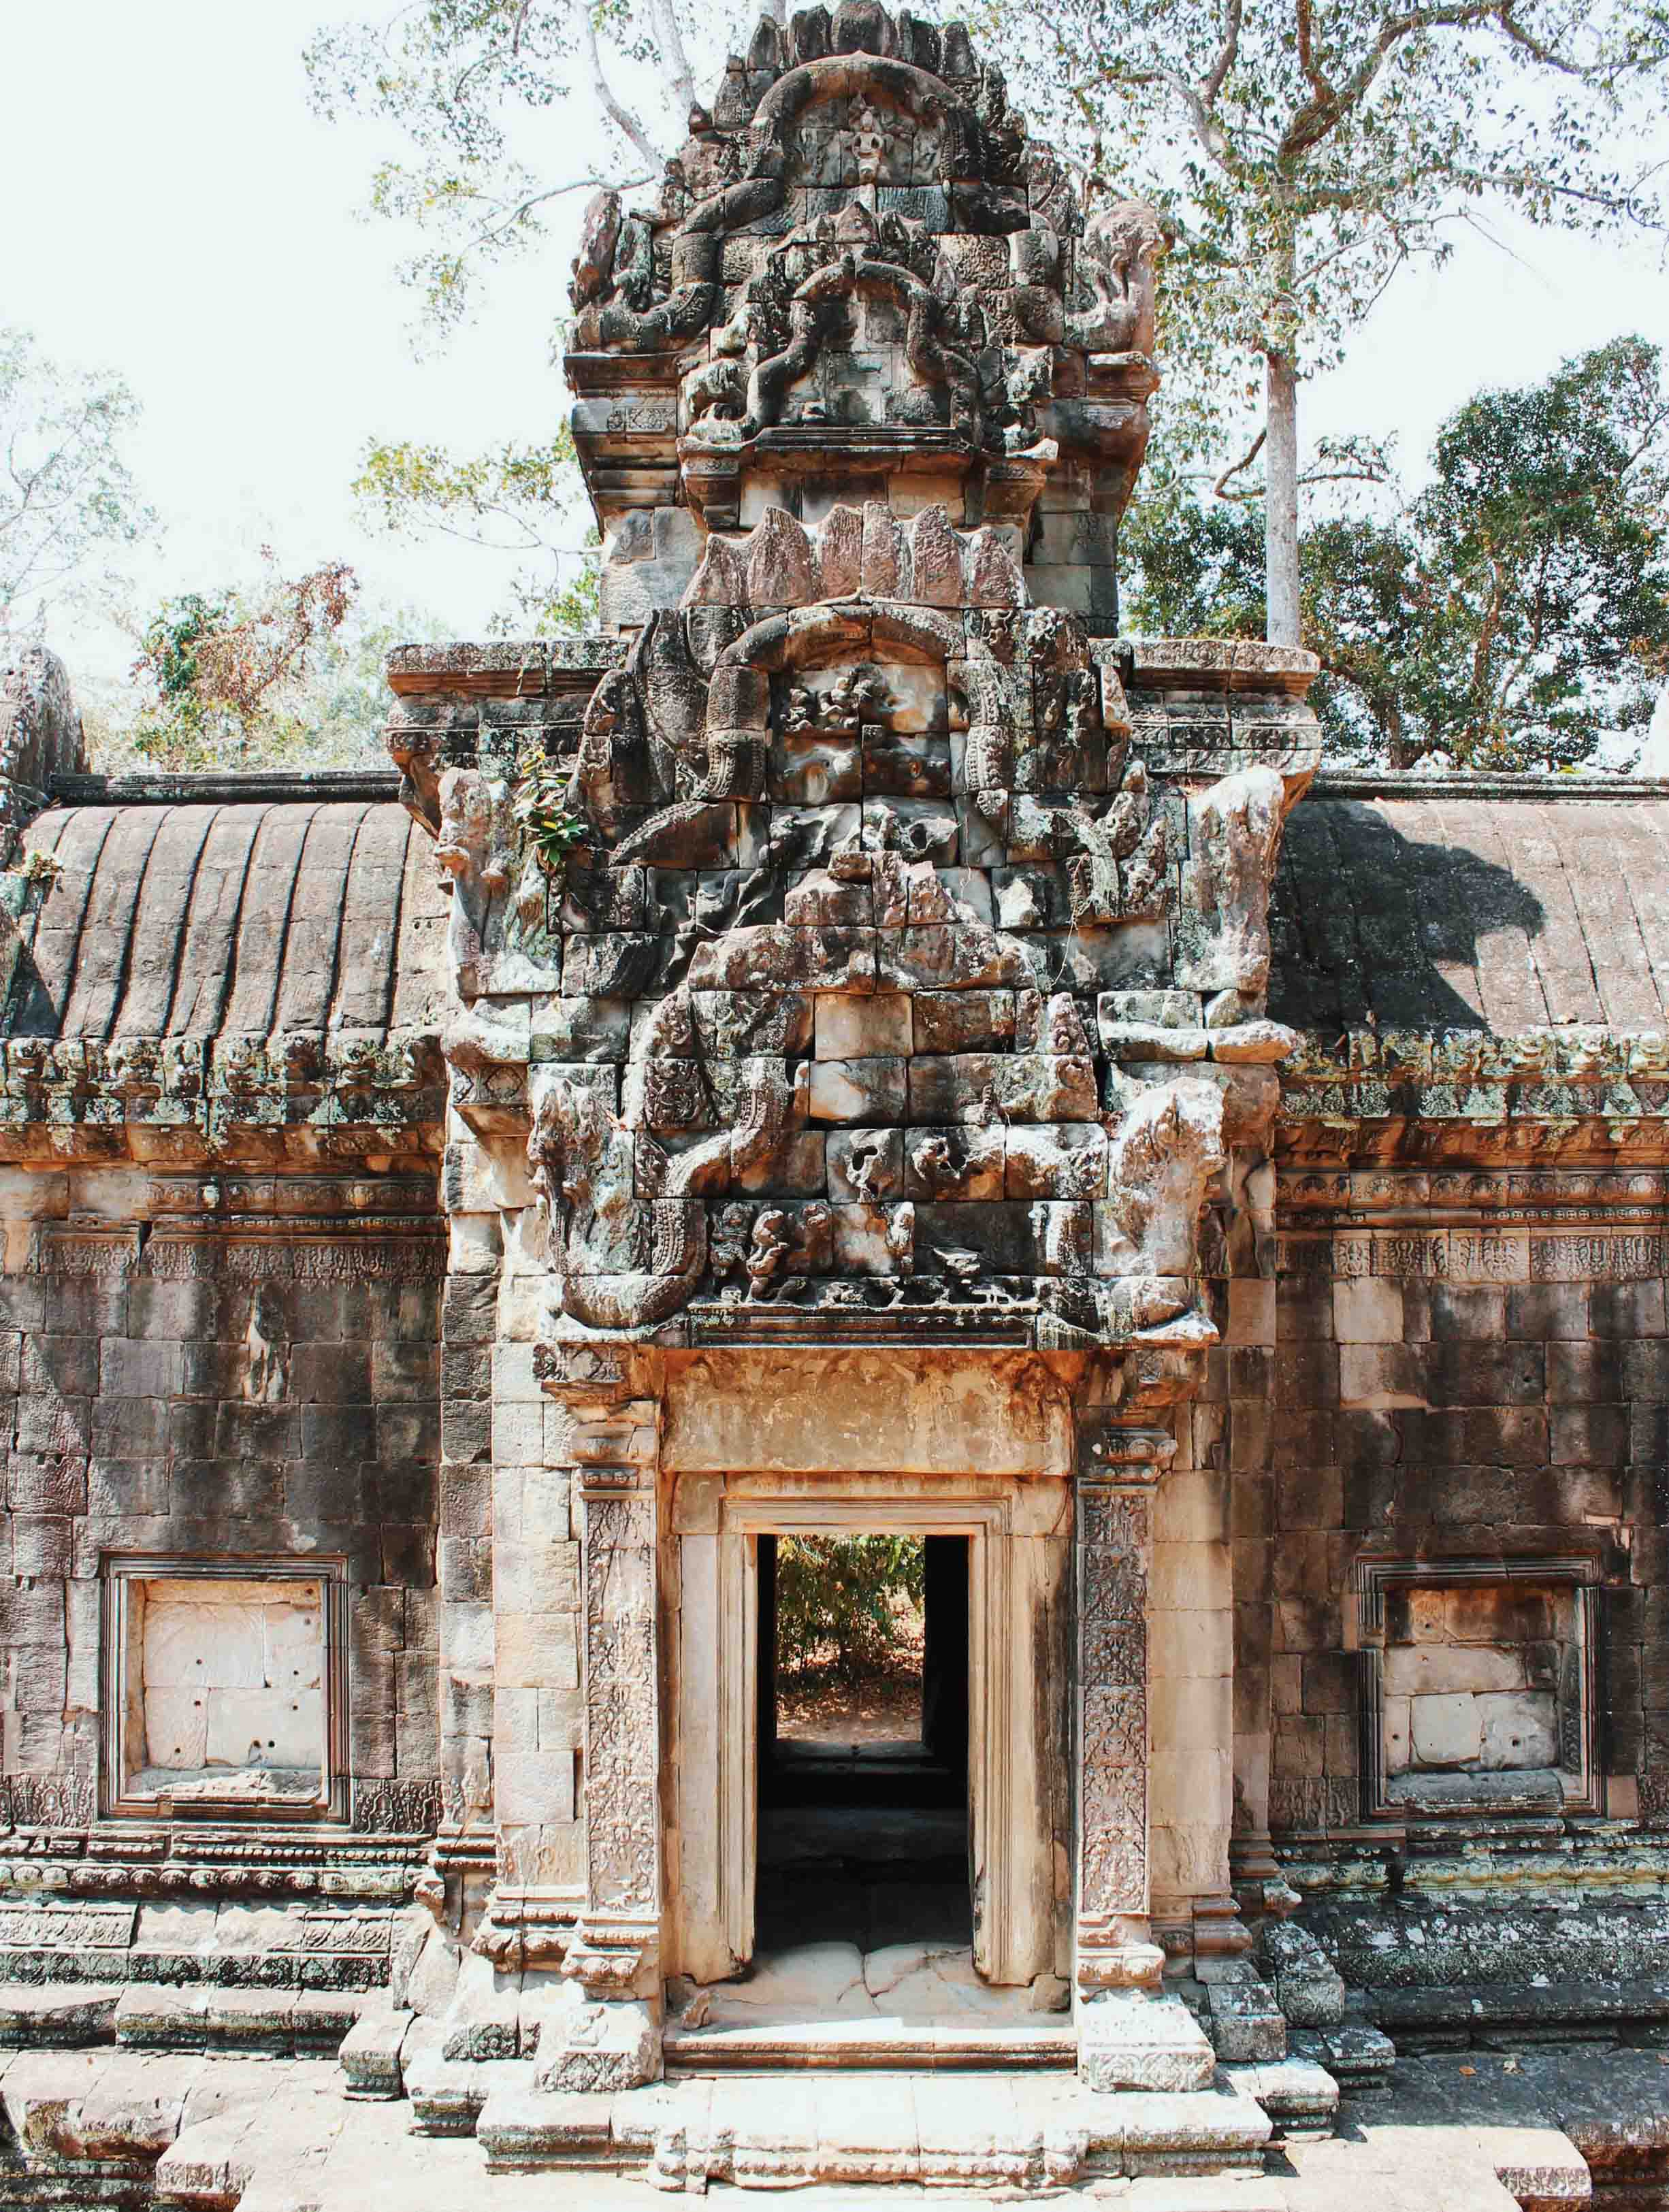 templo-angkor